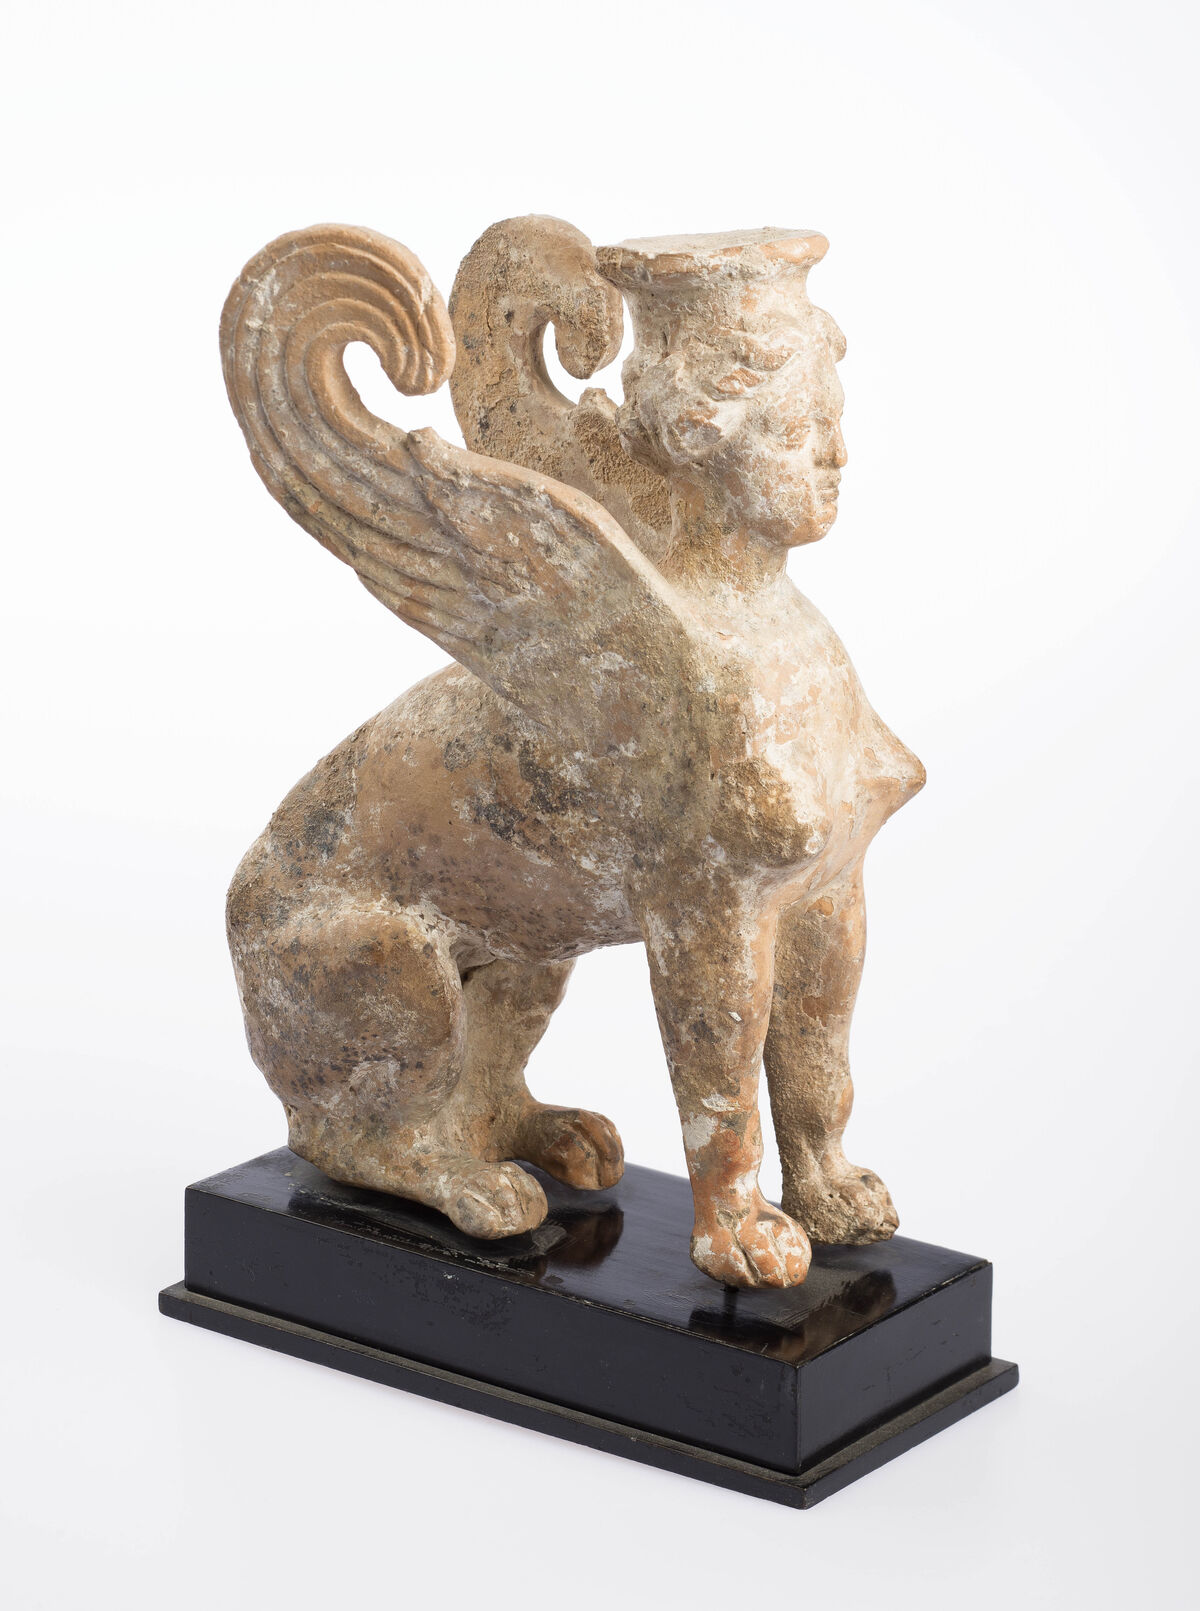 Estatuilla de una Esfinge, de finales del siglo V - principios del siglo IV aC.  Foto de Ardon Bar-Hama.  Cortesía del Museo Freud de Londres.